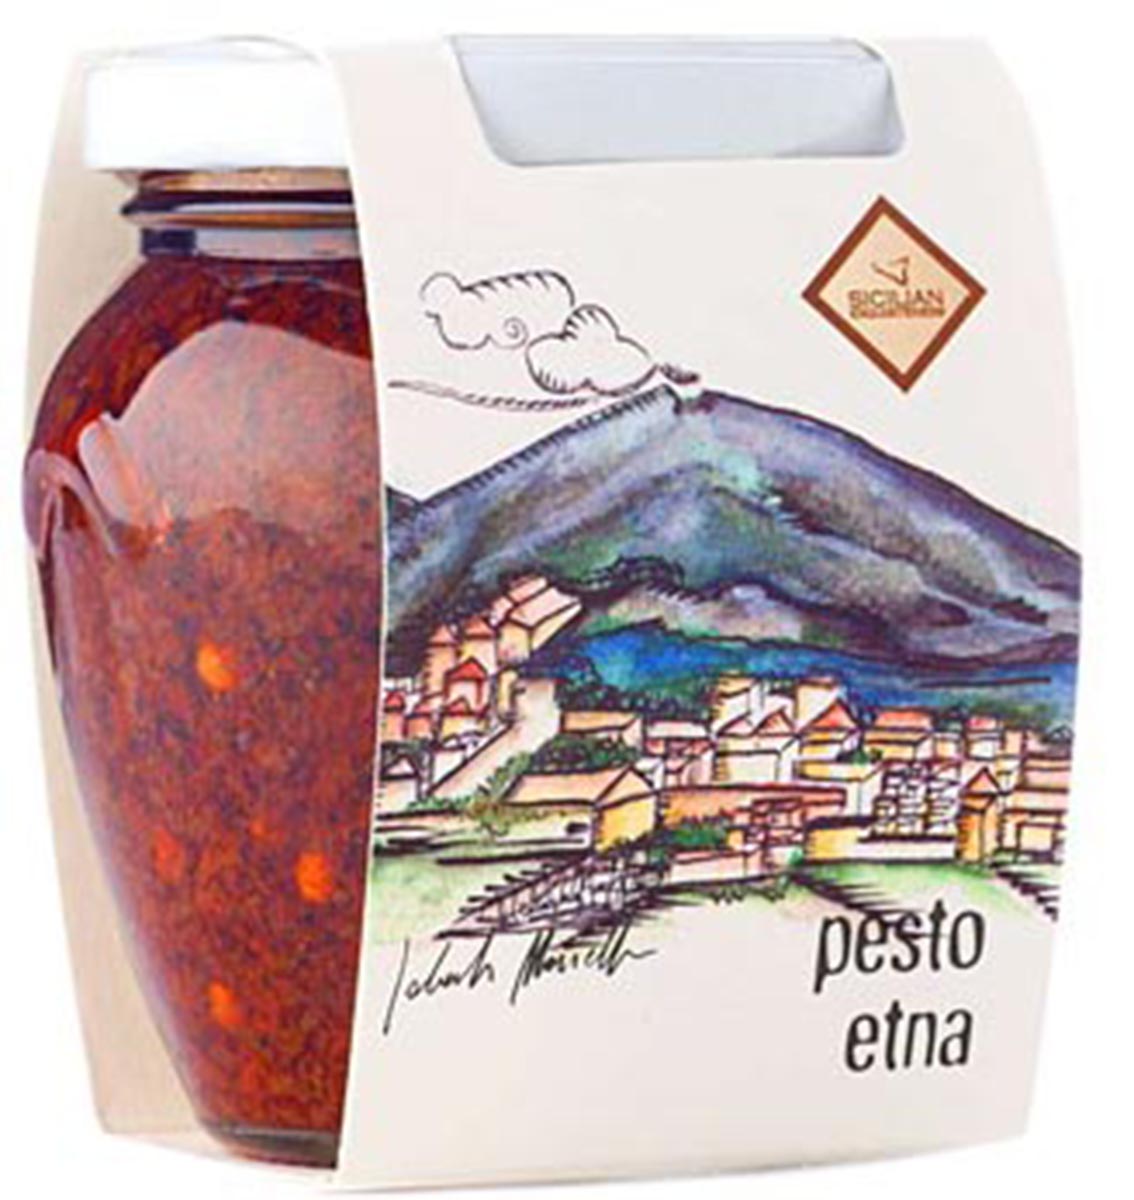 Tomaten-Oliven-Pilz-Pesto - Pesto Etna